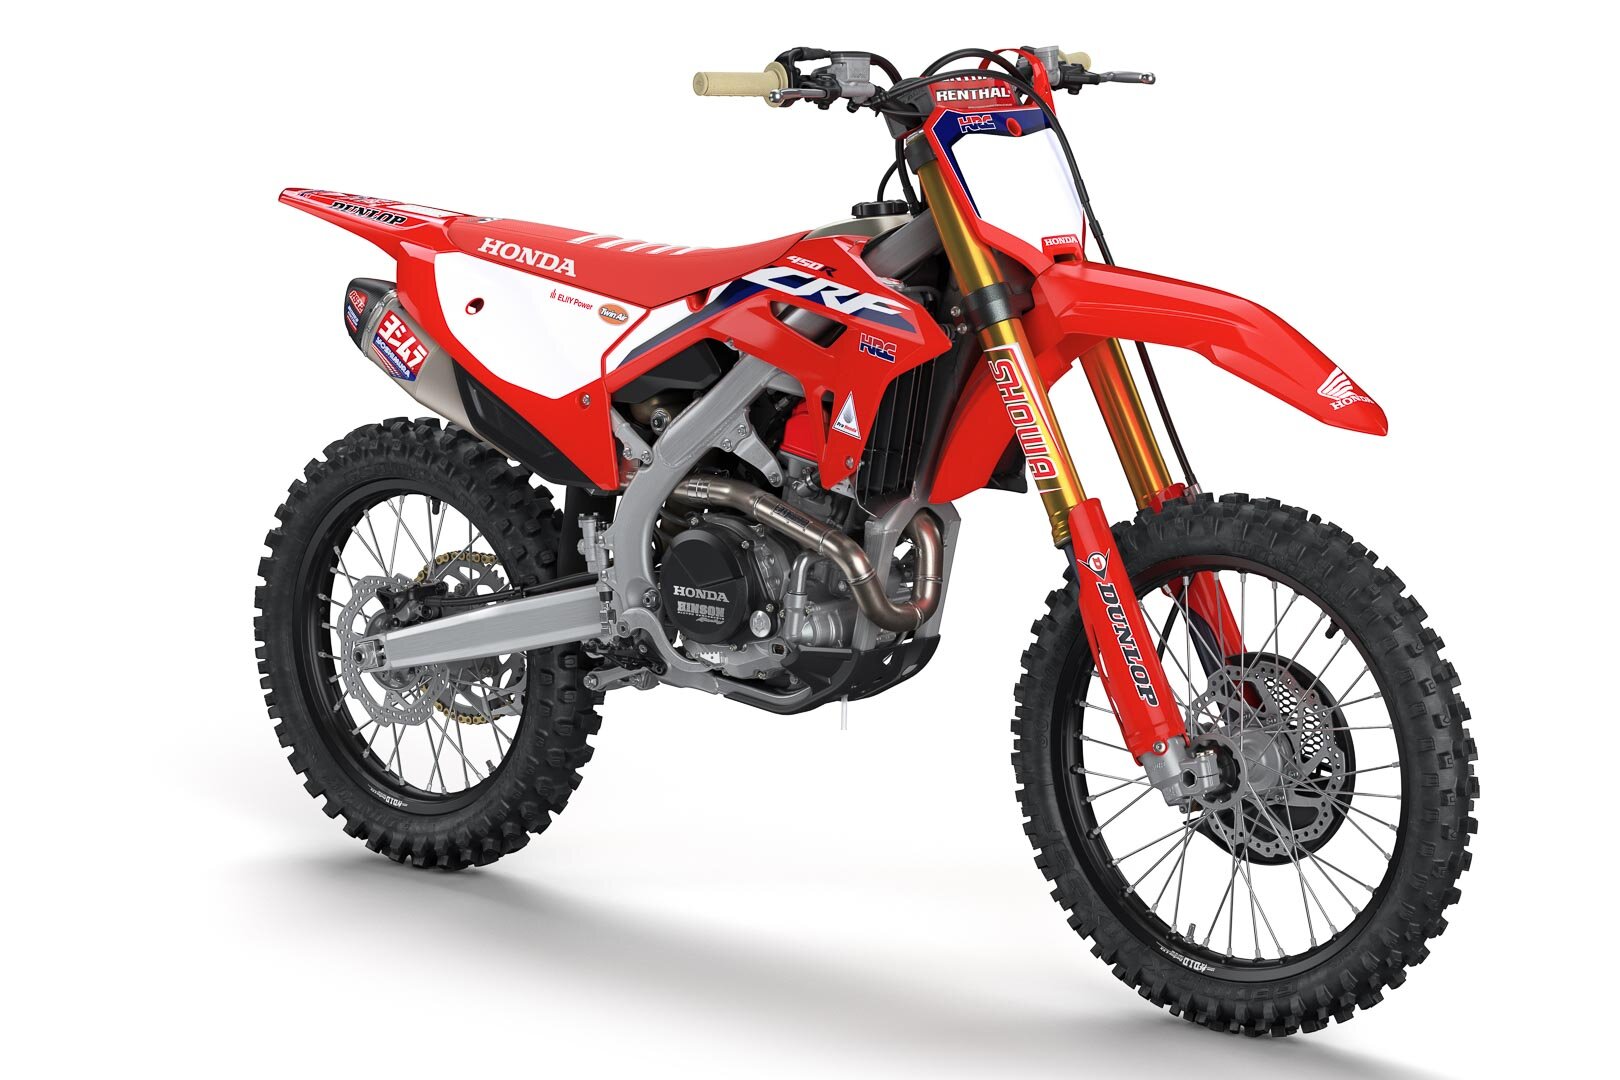 2021-Honda-CRF450RWE-First-Look-works-edition-motocross-supercross-motorcycle-6.jpg